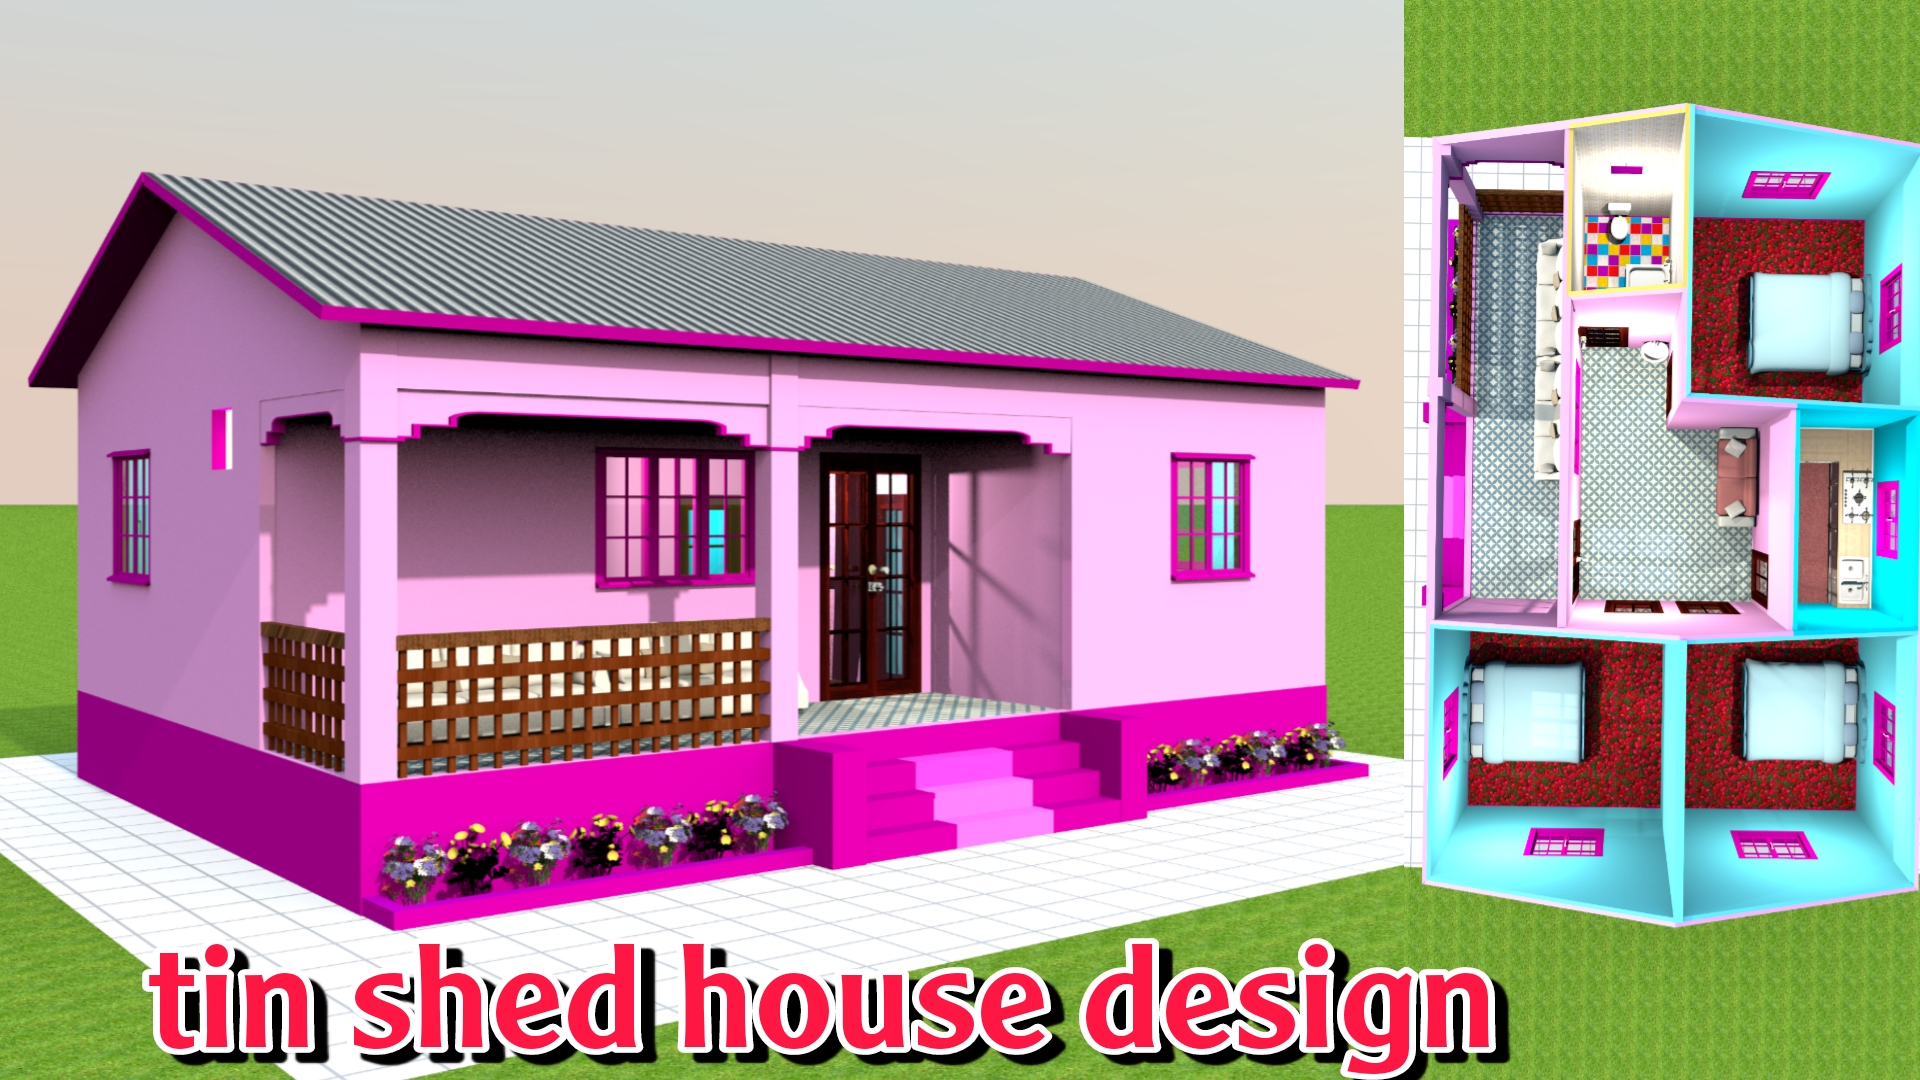 गाव के लिए शानदार टिनशेड घर का डिजाईन